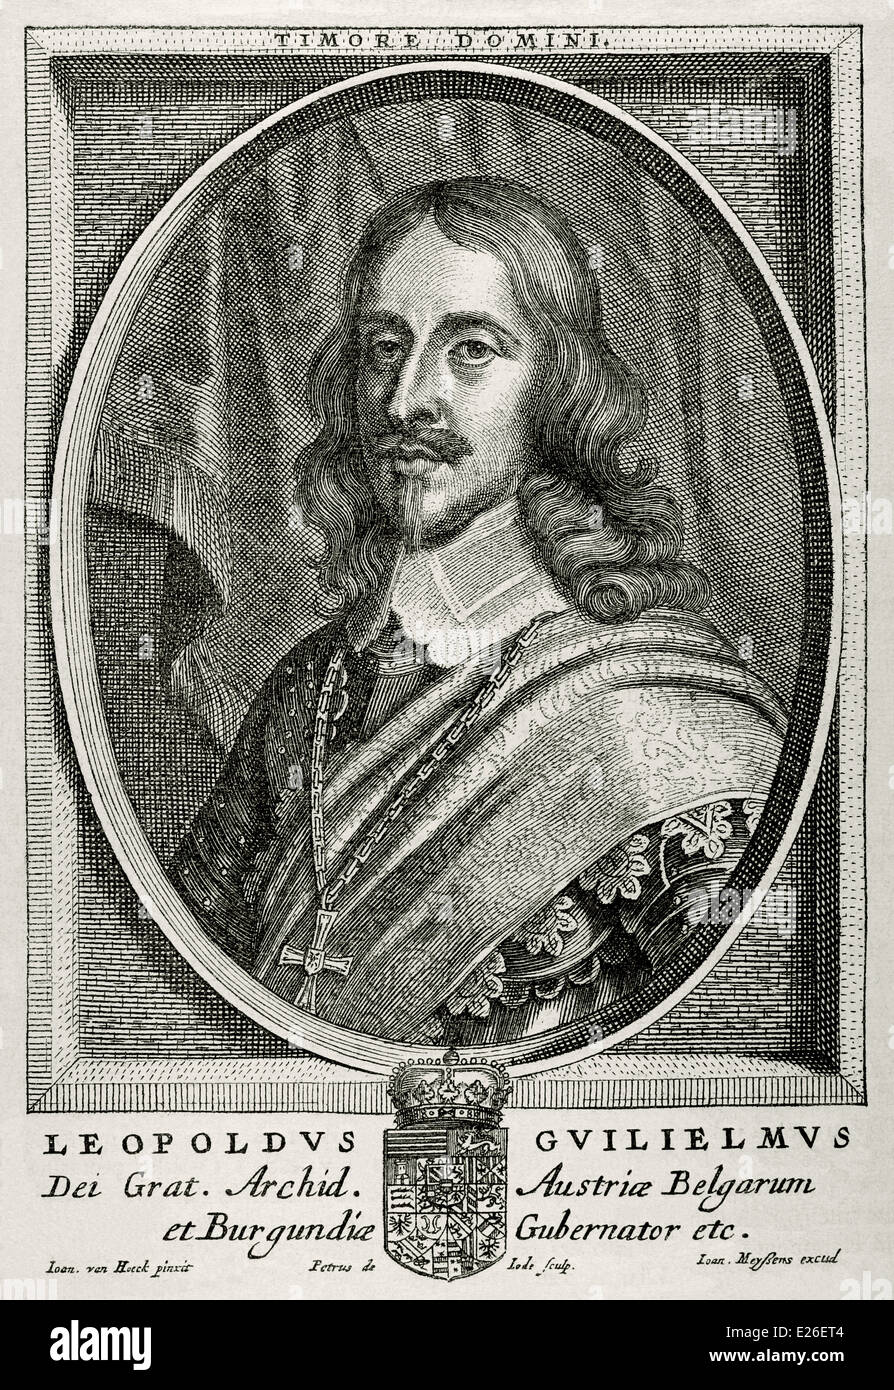 El archiduque Leopoldo Guillermo de Austria (1614-1662). Comandante militar austriaca. Retrato. Grabado. Foto de stock